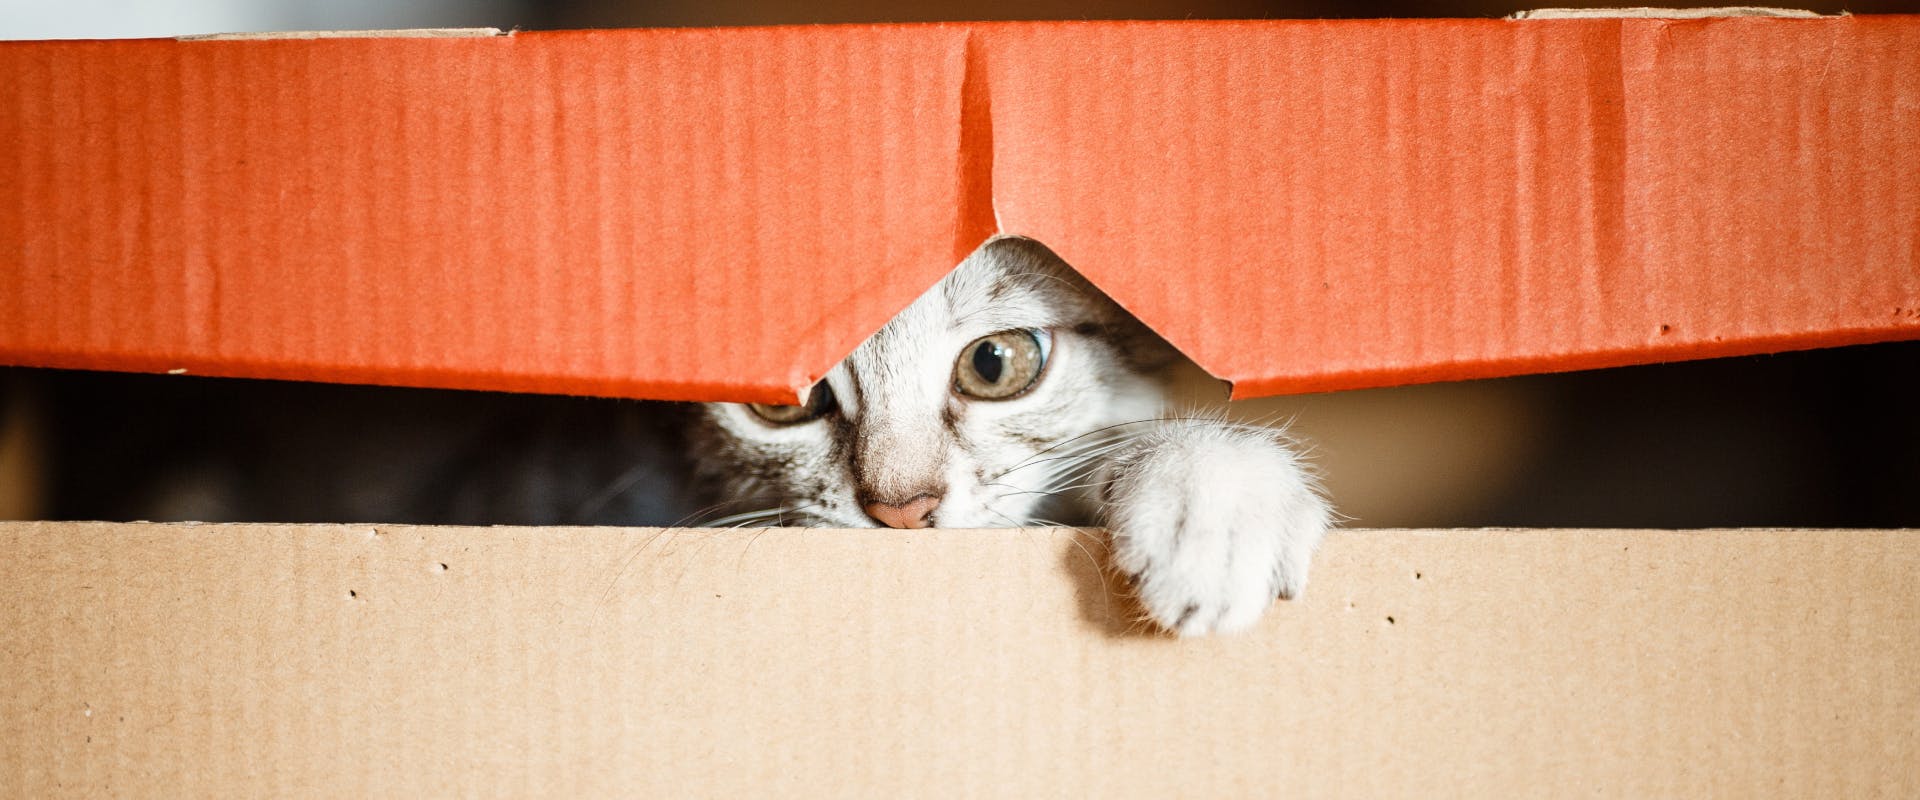 A rescue cat hides in a box.